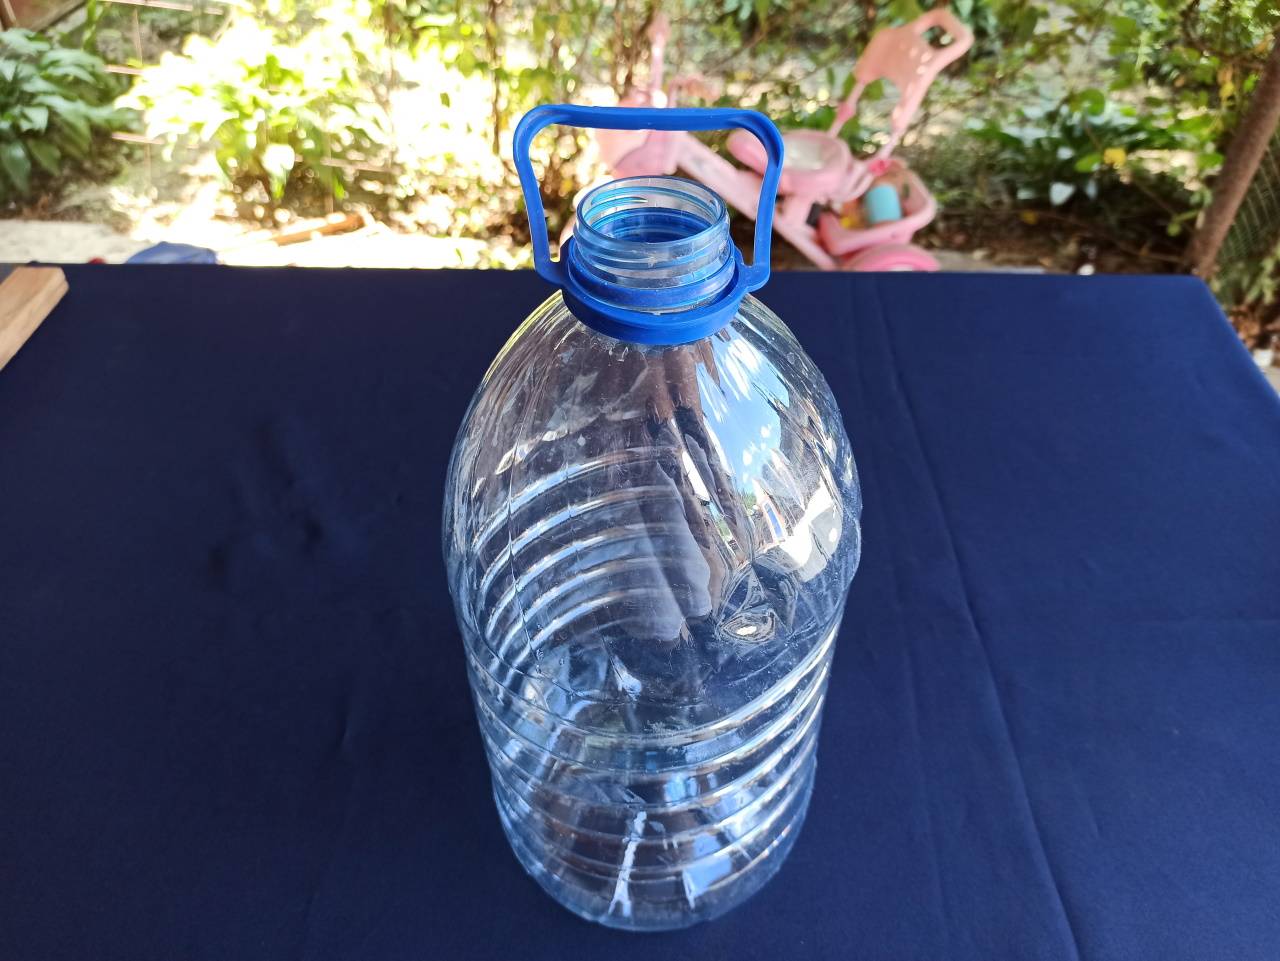 Поделки из пластиковых бутылок - 125 новых фото идей поделок для детей, детей, сада, дачи, дома